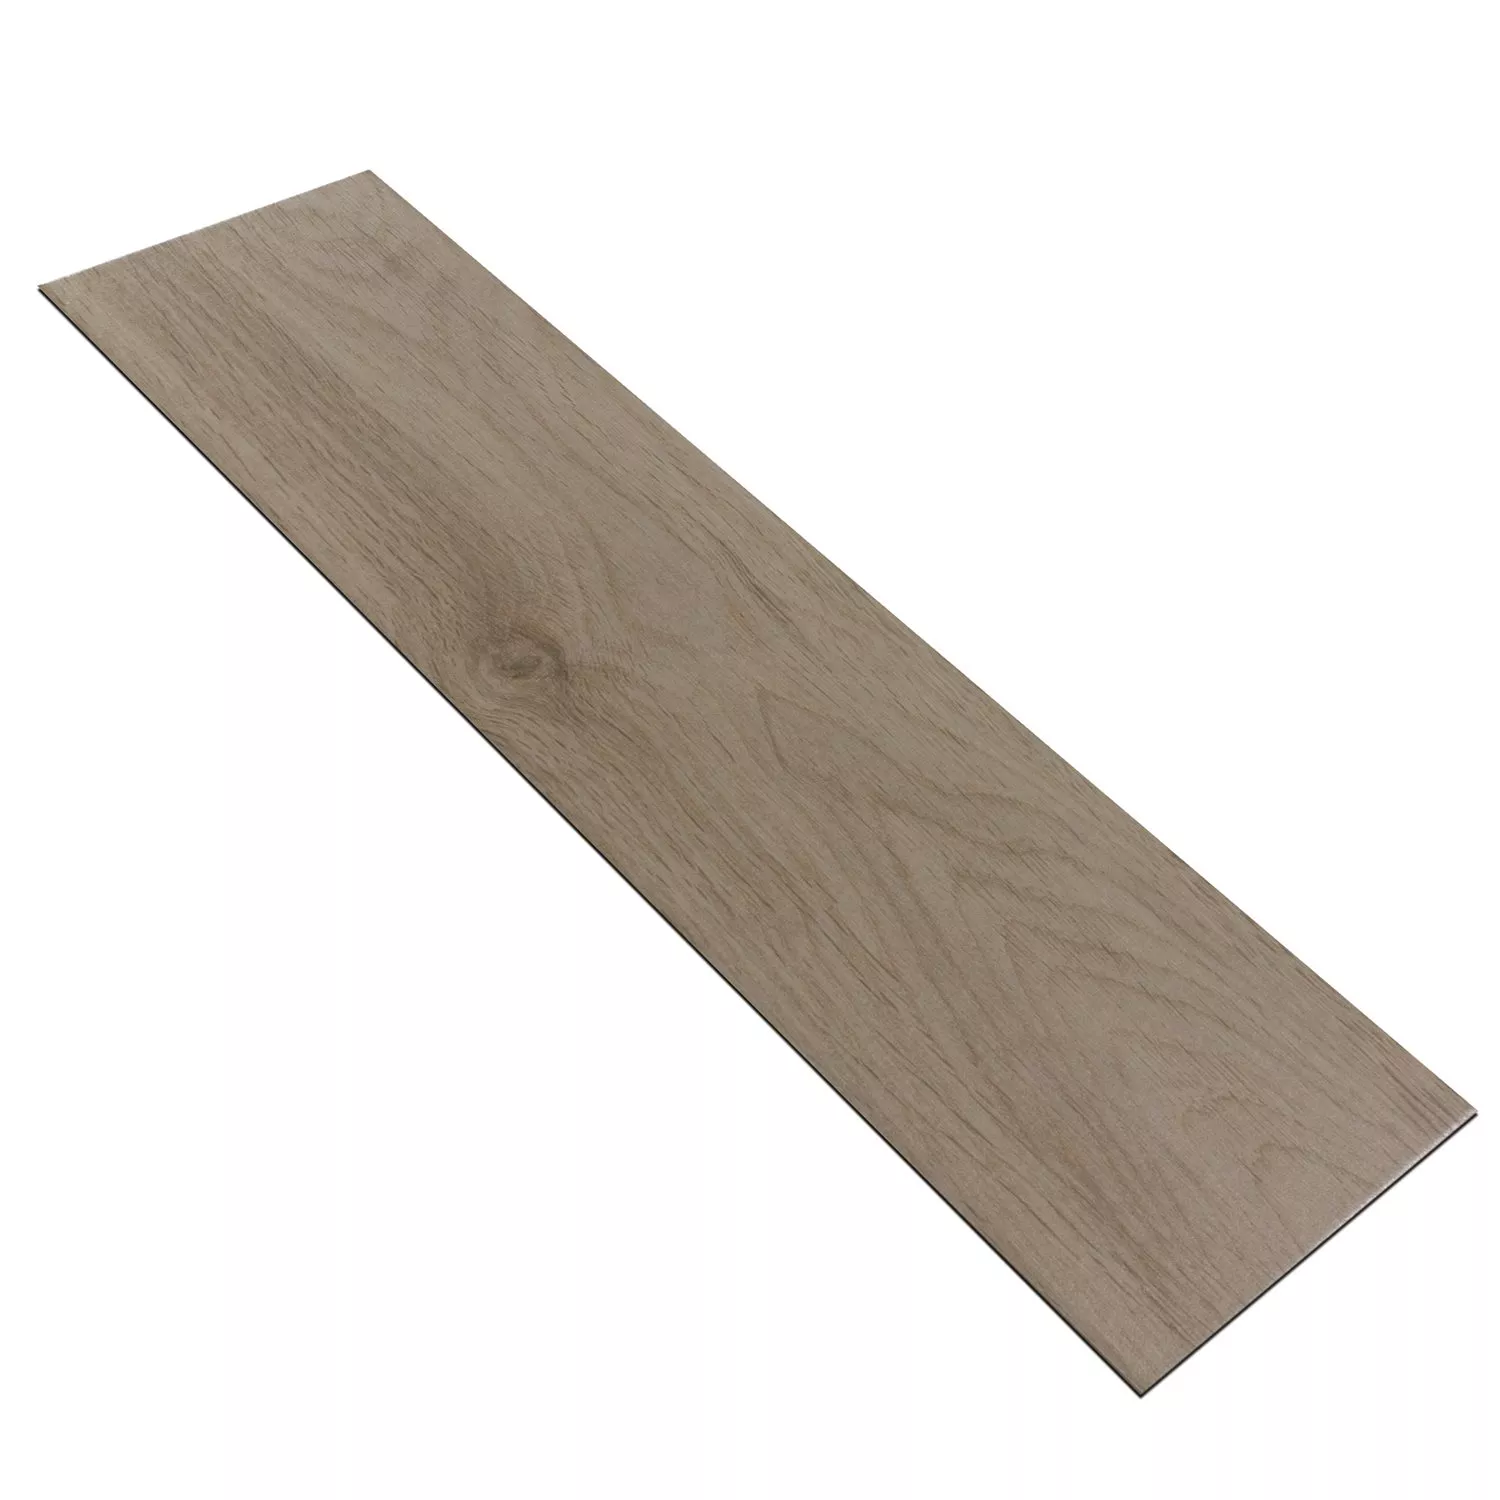 Sample Wood Optic Floor Tiles Eiffel Smoke 10x60cm